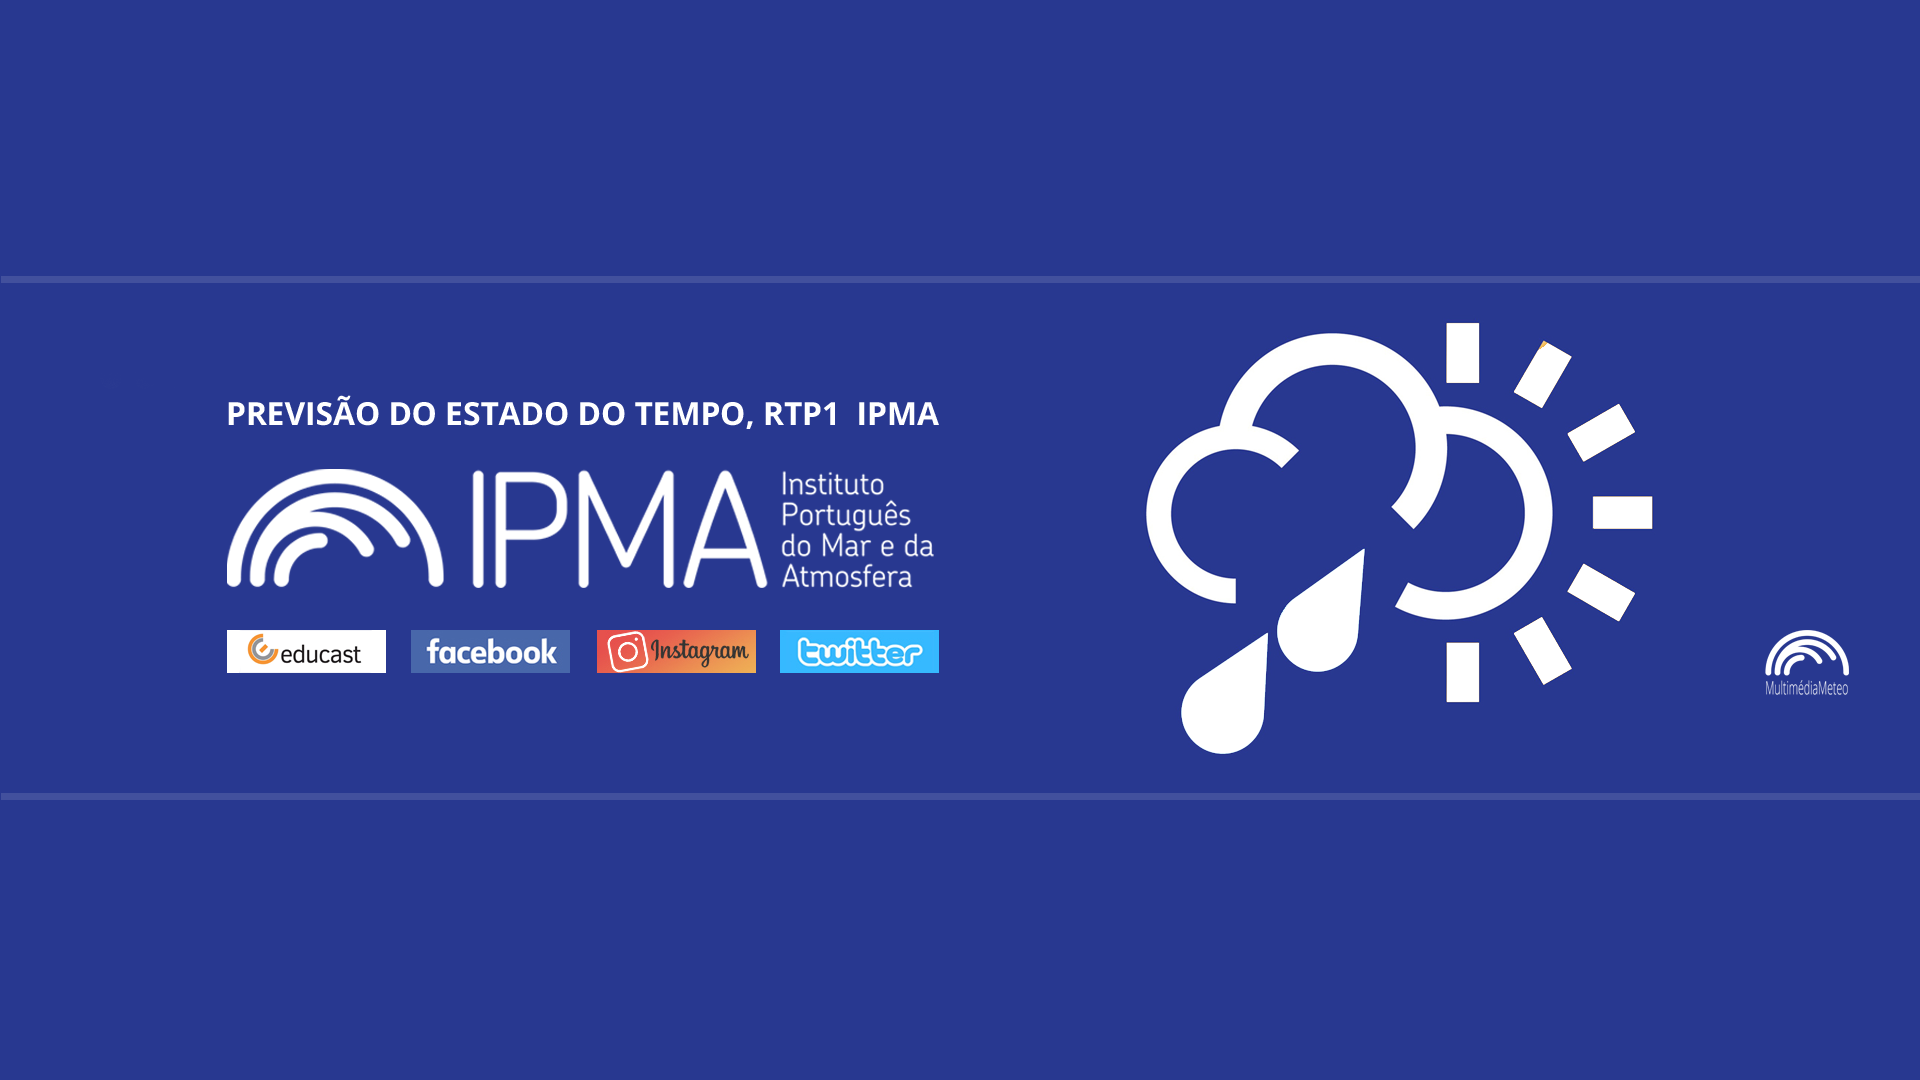  Previsão do estado do tempo, RTP1, 04-02-2022, IPMA.